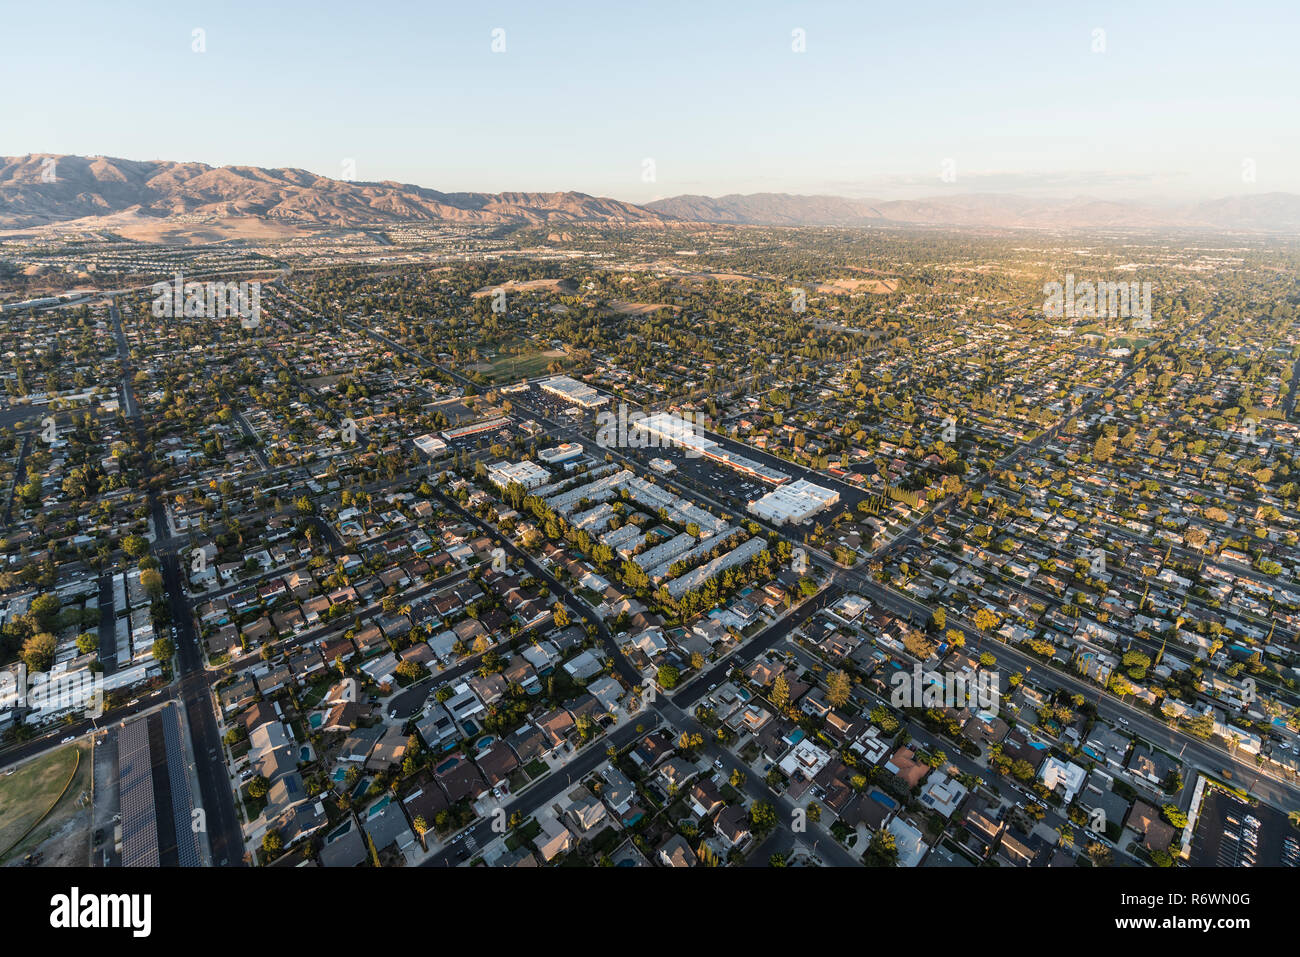 Vue aérienne de maisons et de rues, près de Lassen et Mason St Ave dans le Chatsworth quartier de Los Angeles, Californie. Banque D'Images